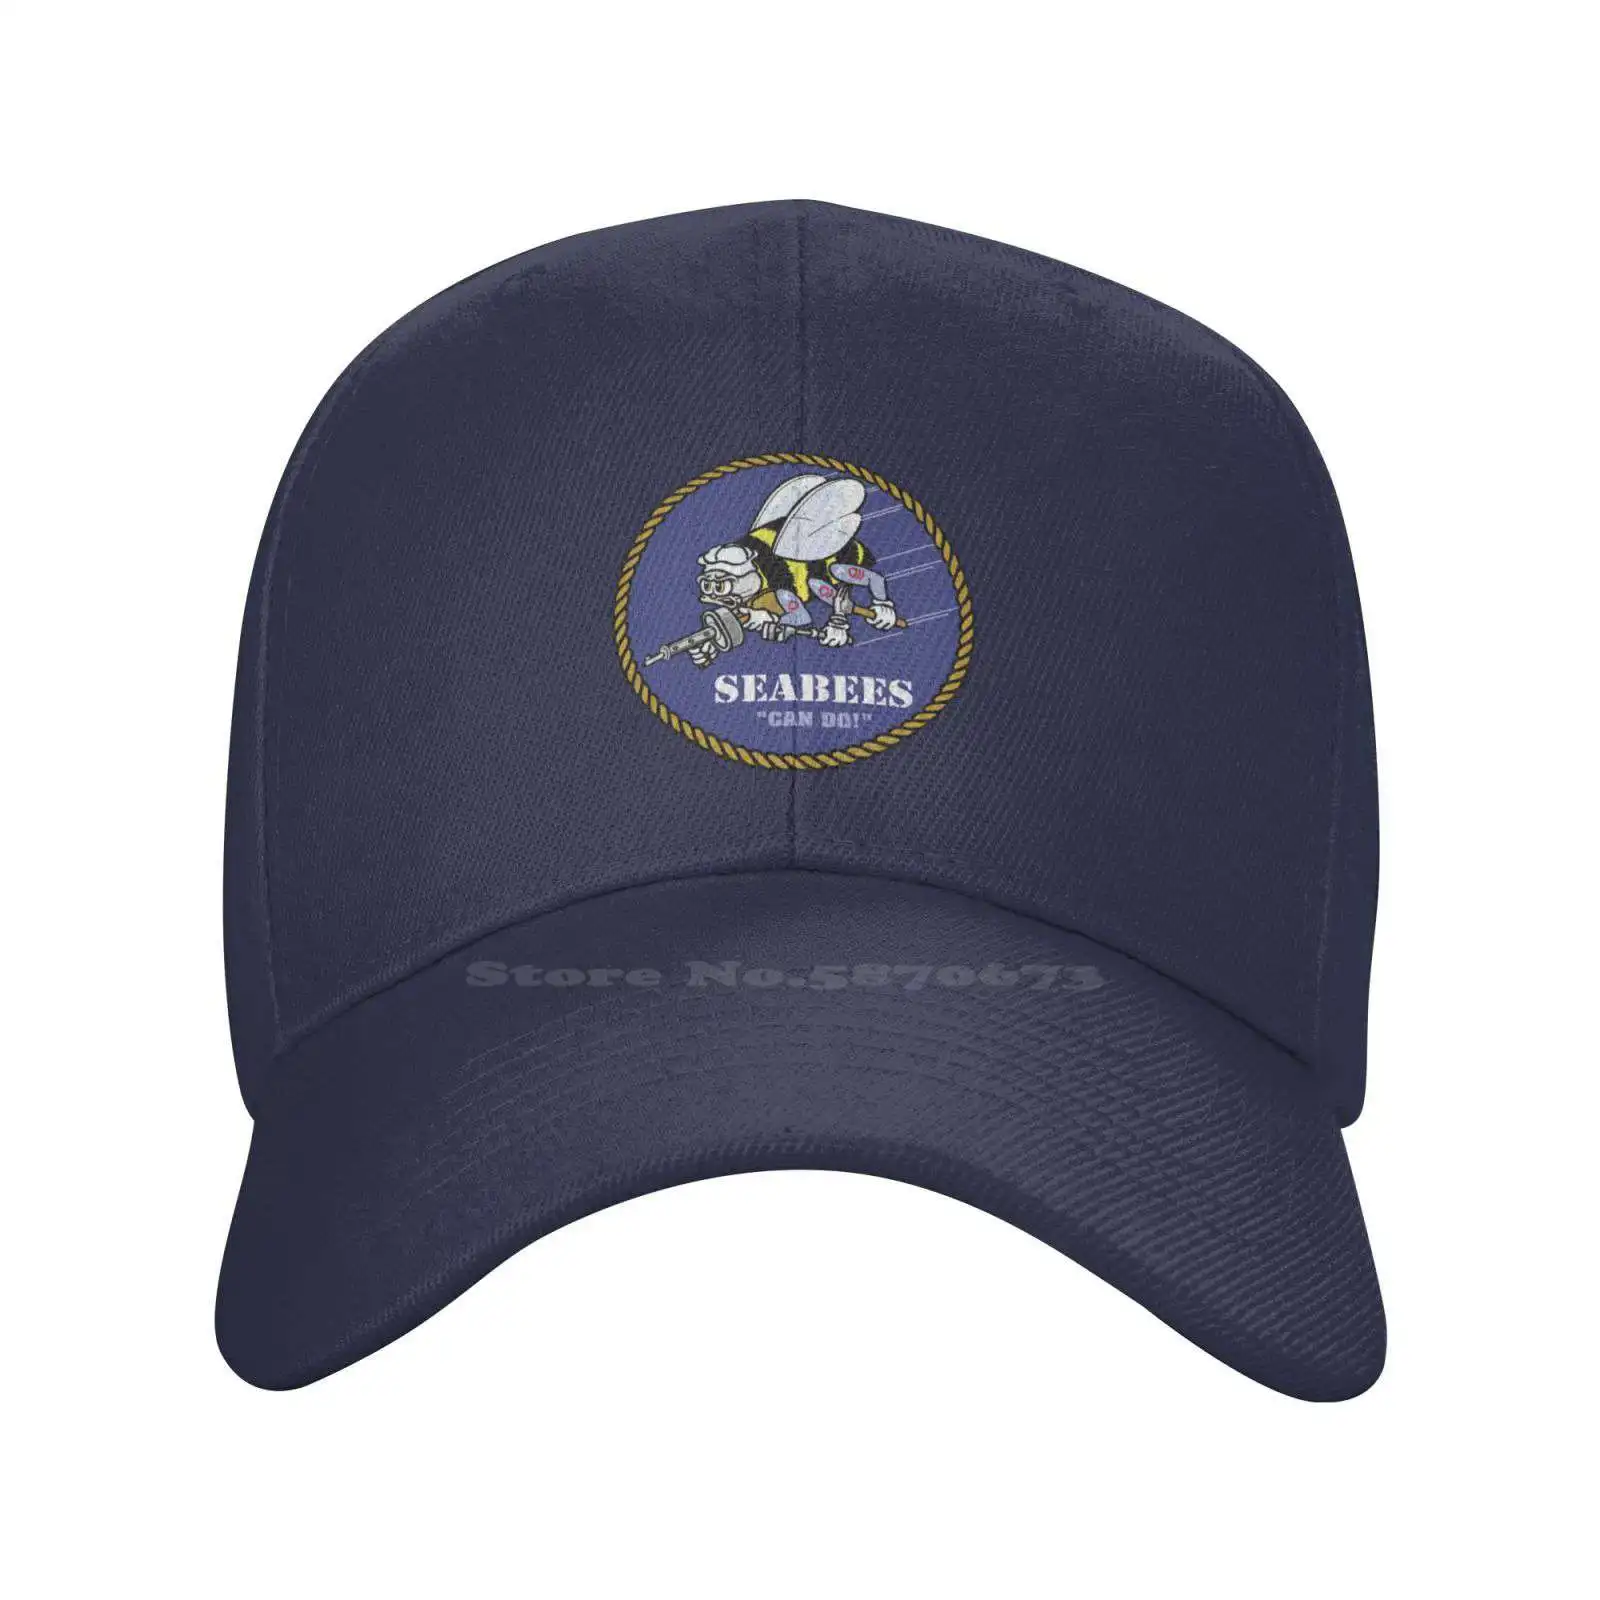 Графическая кепка с логотипом Seabees, высококачественная джинсовая кепка, вязаная шапка, бейсболка . ' - ' . 0